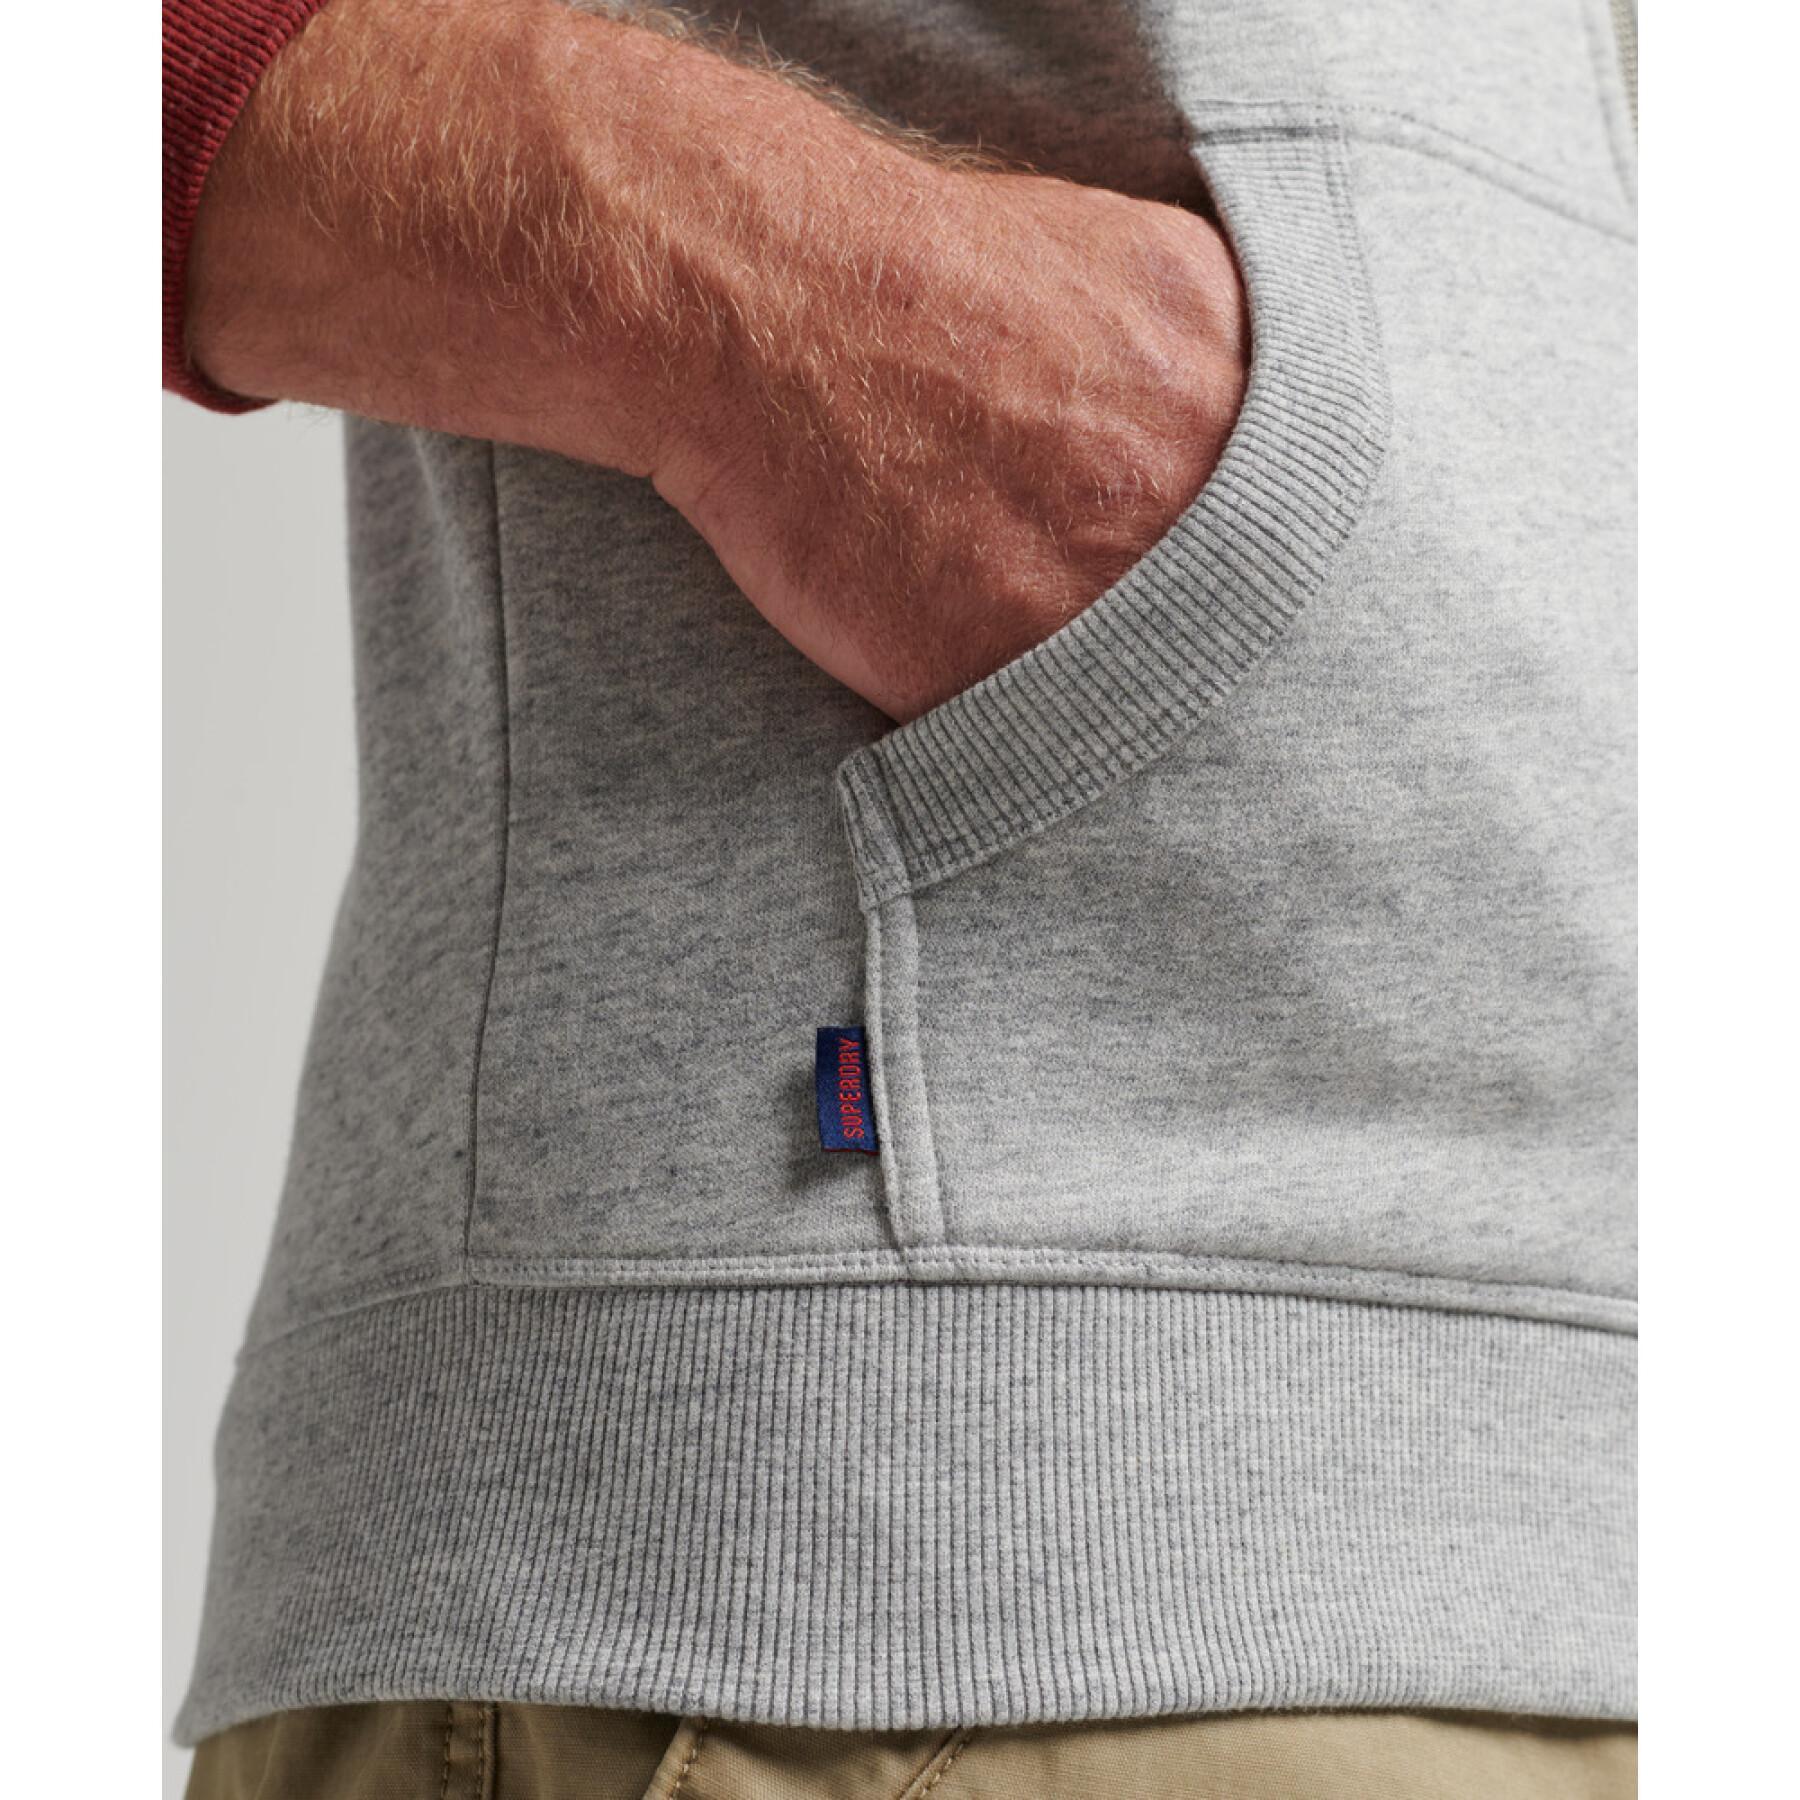 Sweatshirt zippé à capuche en coton bio Superdry Vintage Logo